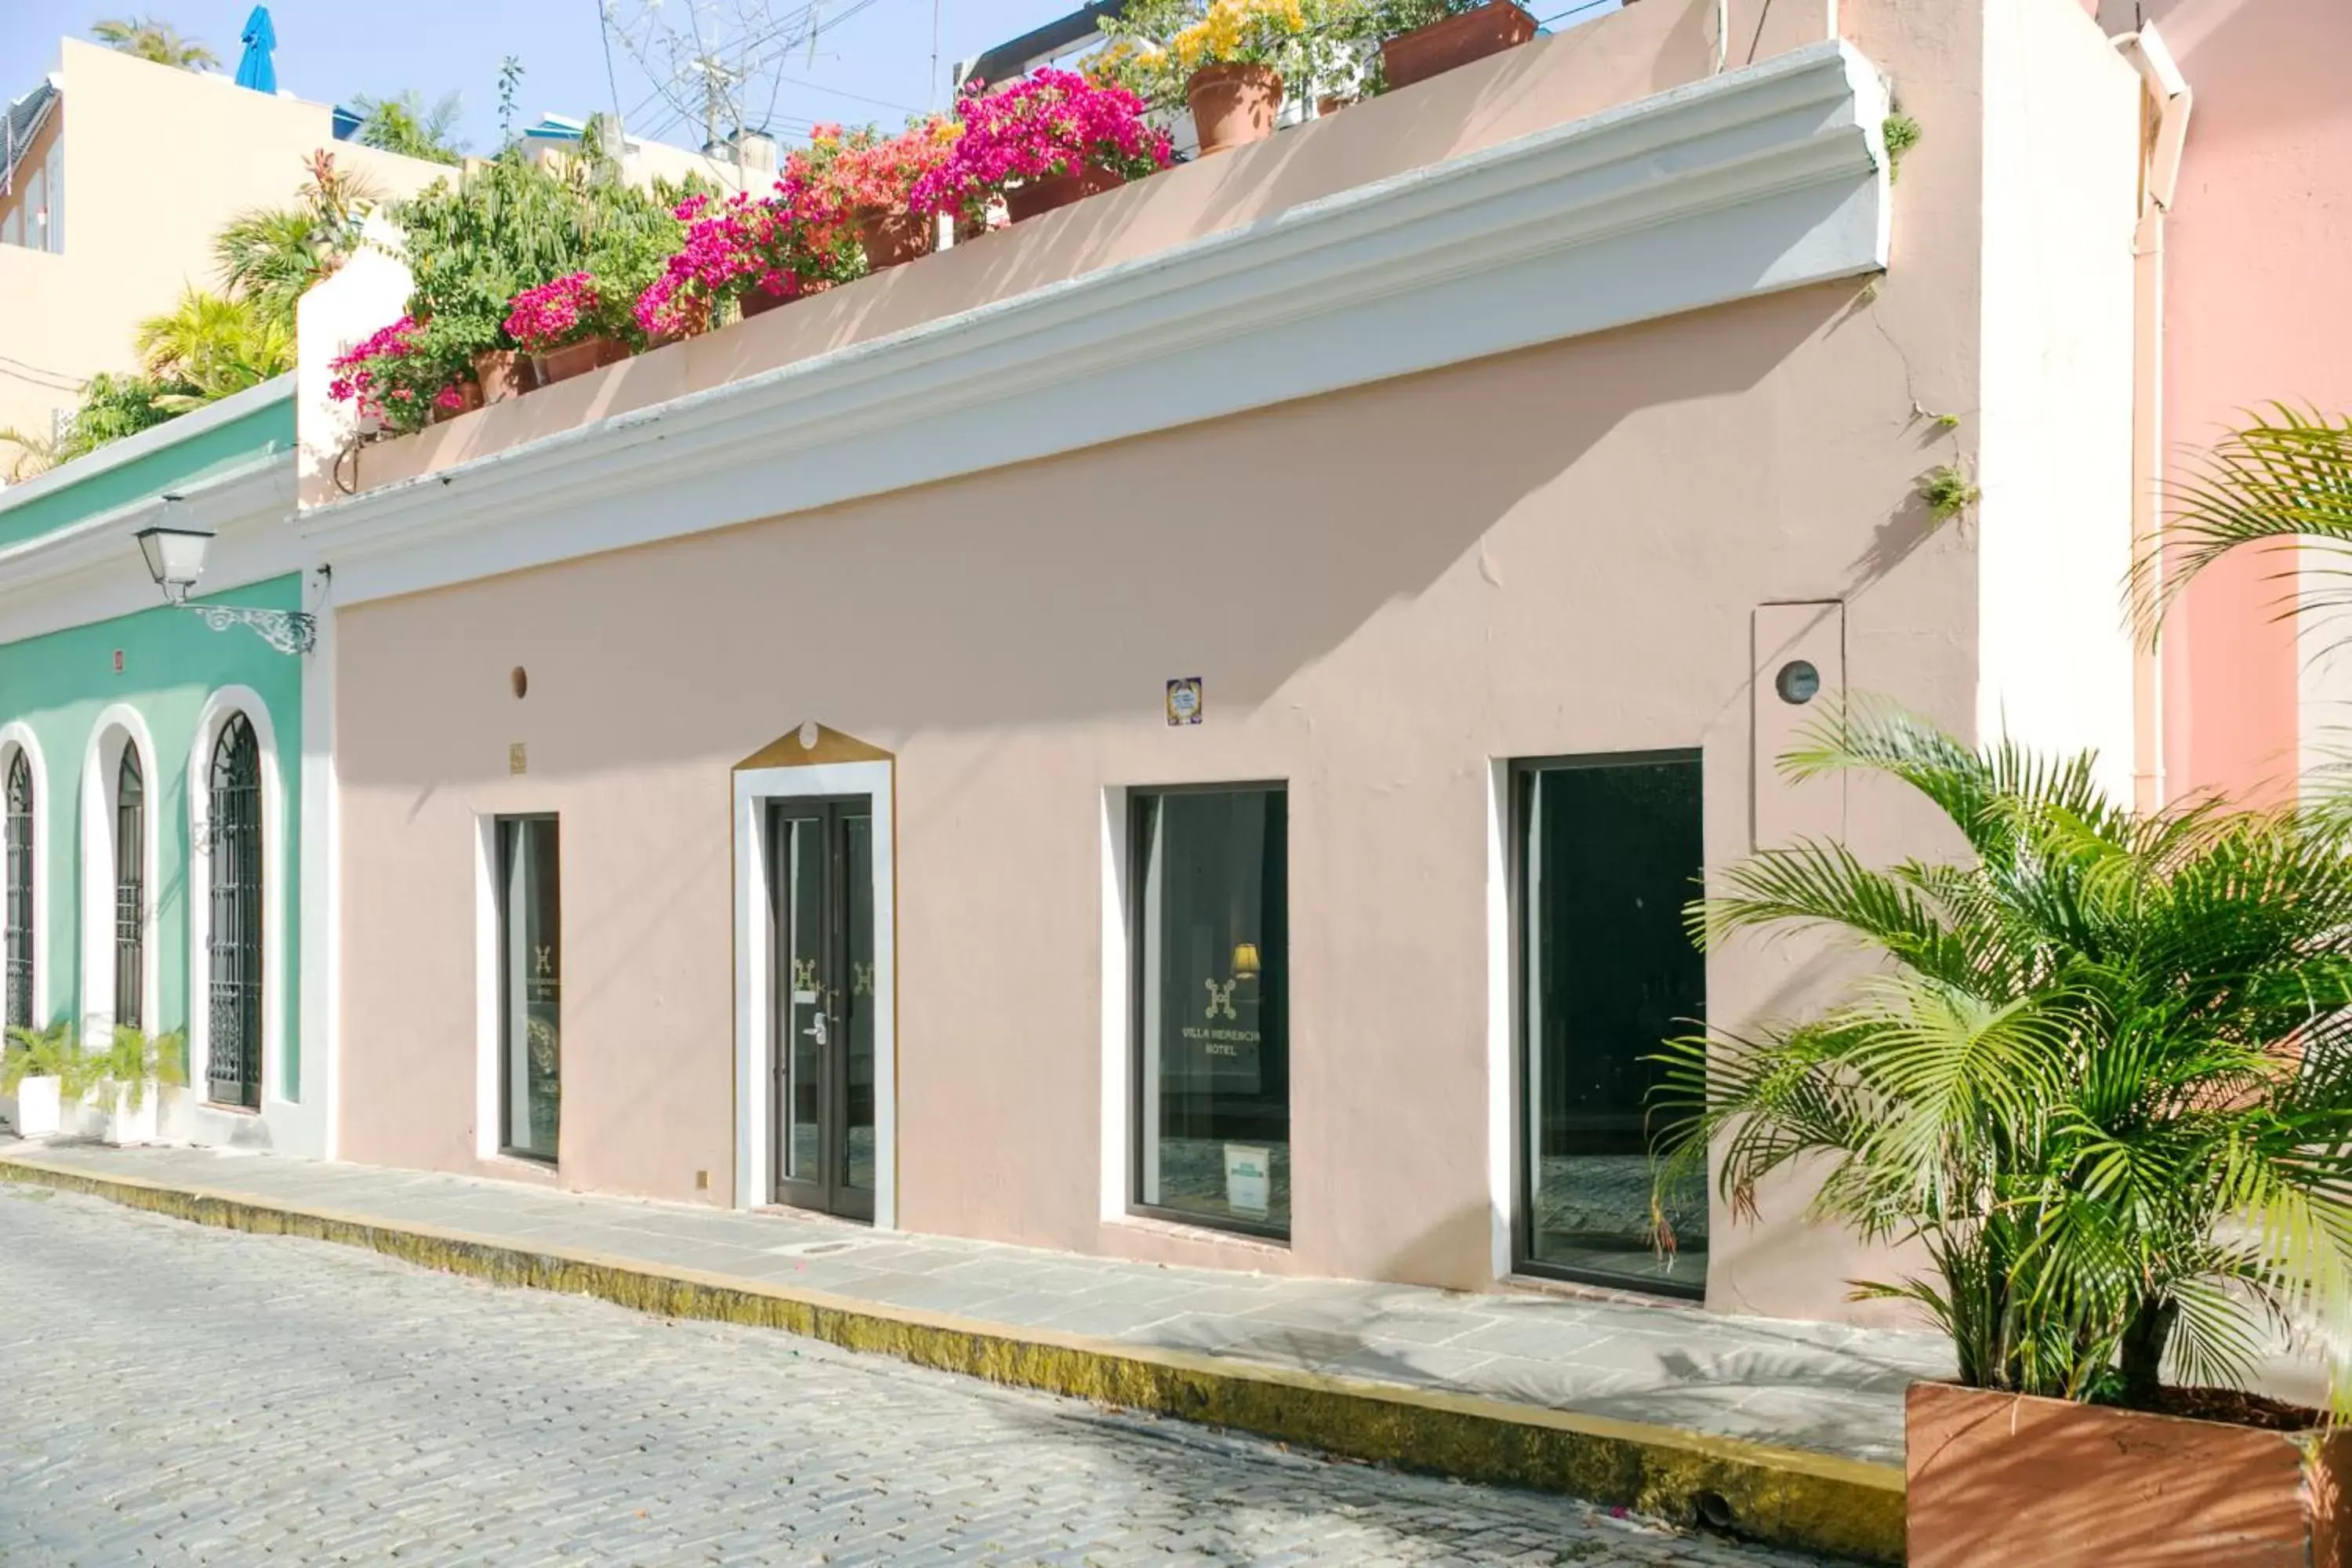 Facade/entrance, Property Building in Villa Herencia Hotel